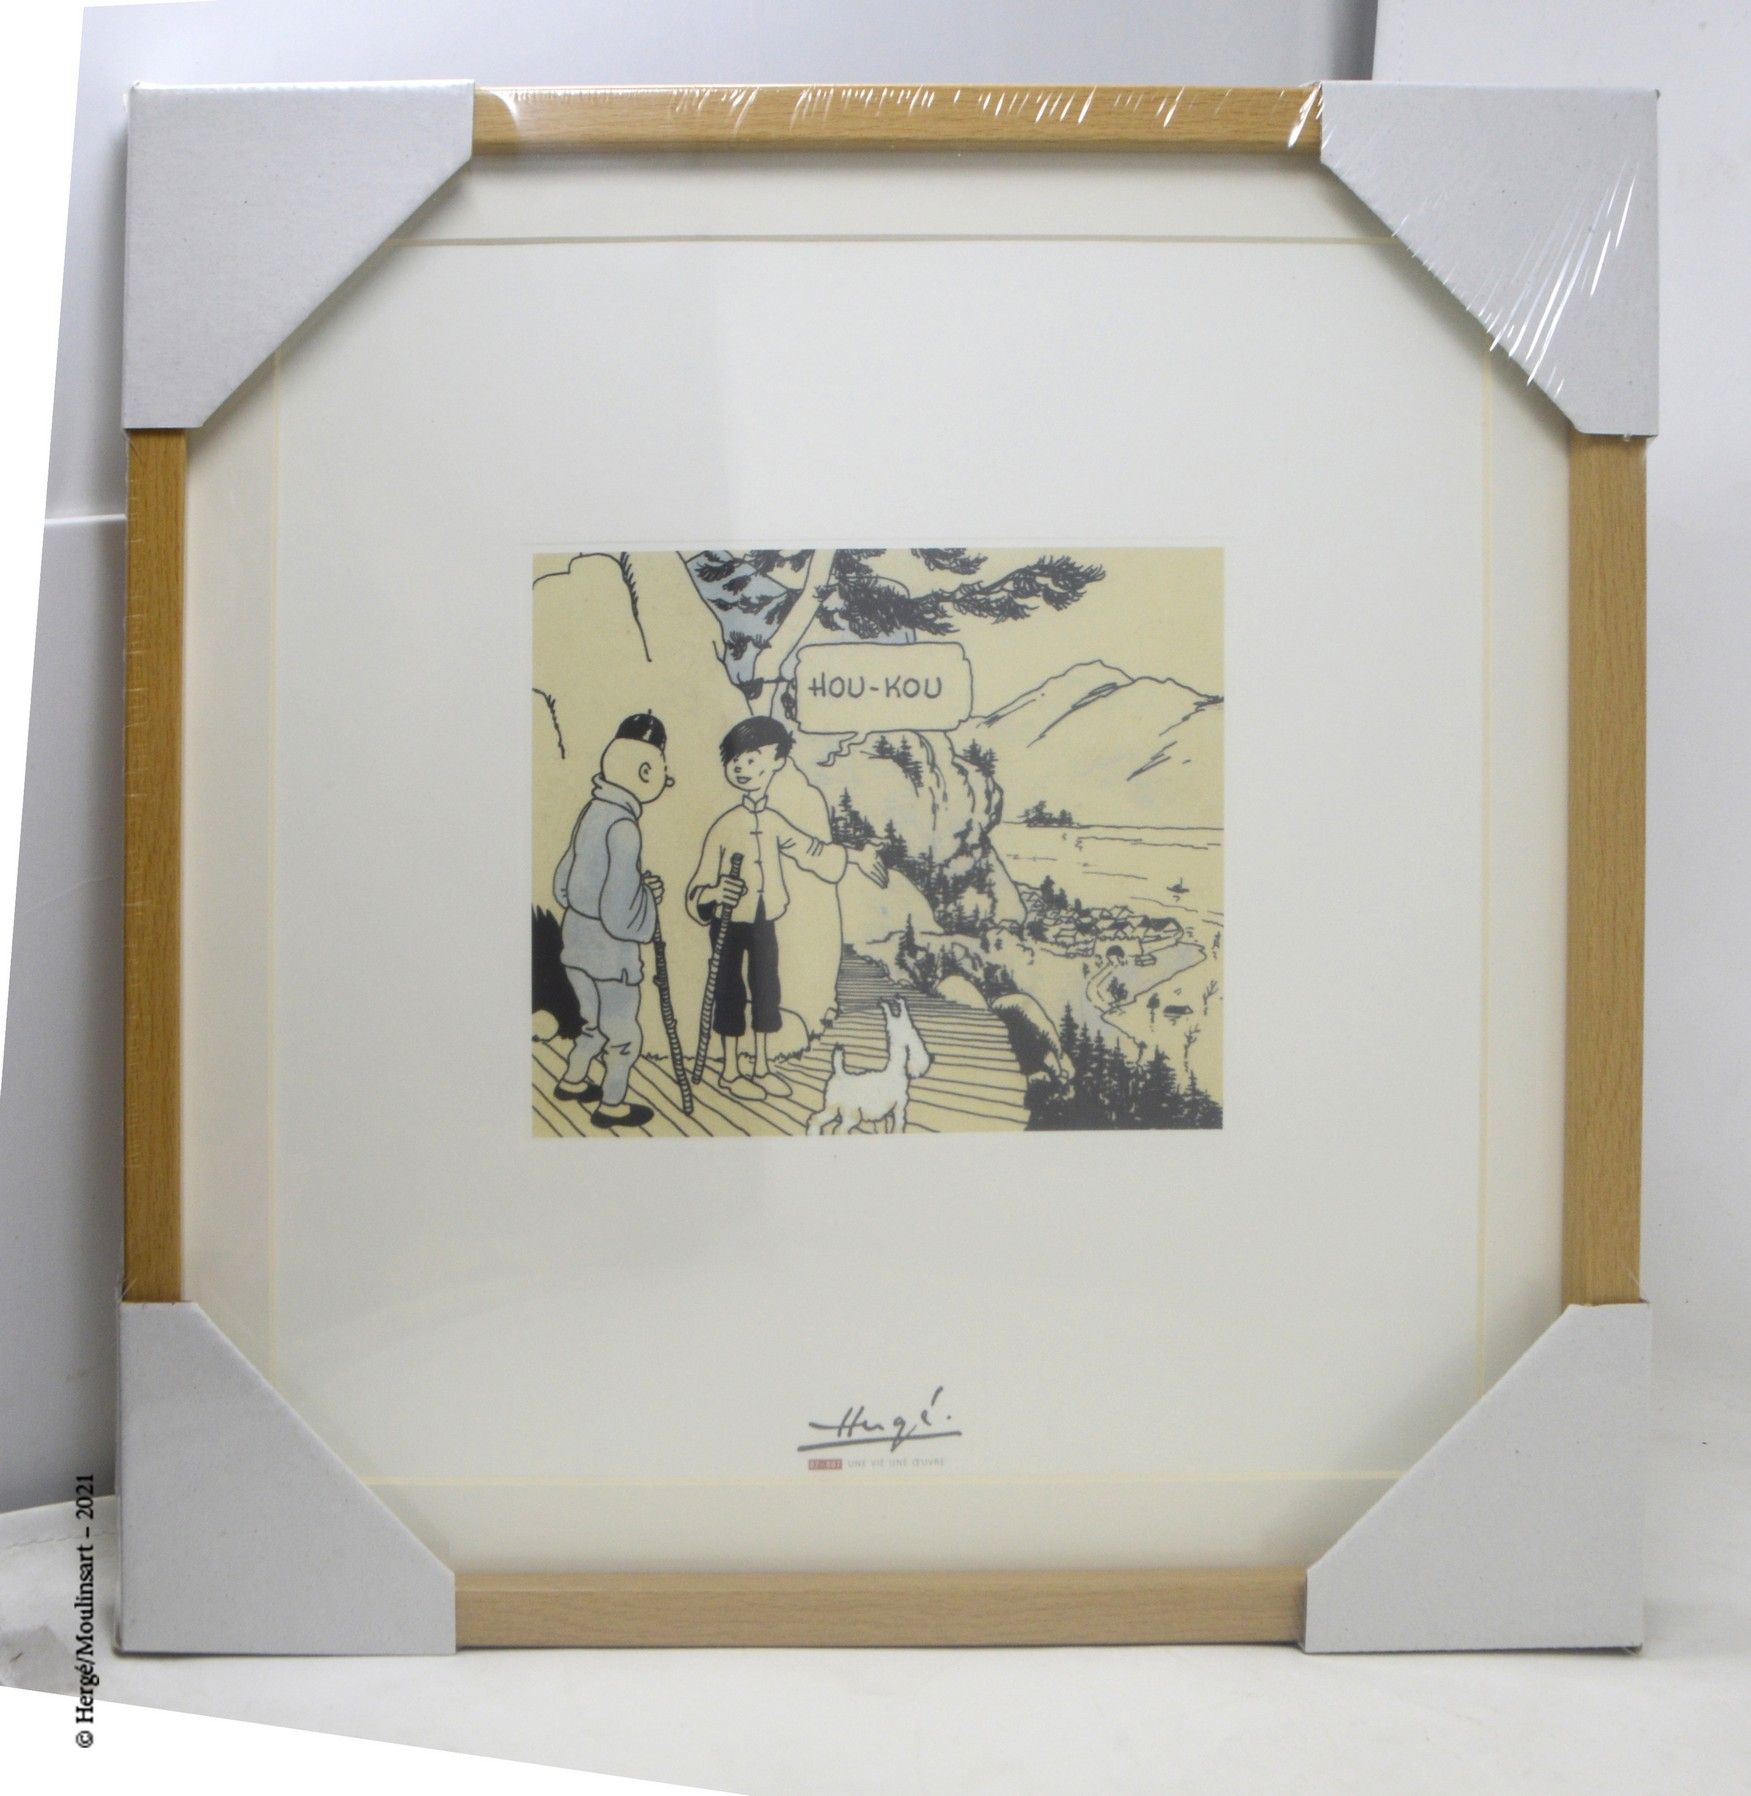 LE LOTUS BLEU HERGÉ/MOULINSART

Litografía Moulinsart : Hergé, una vida, una obr&hellip;